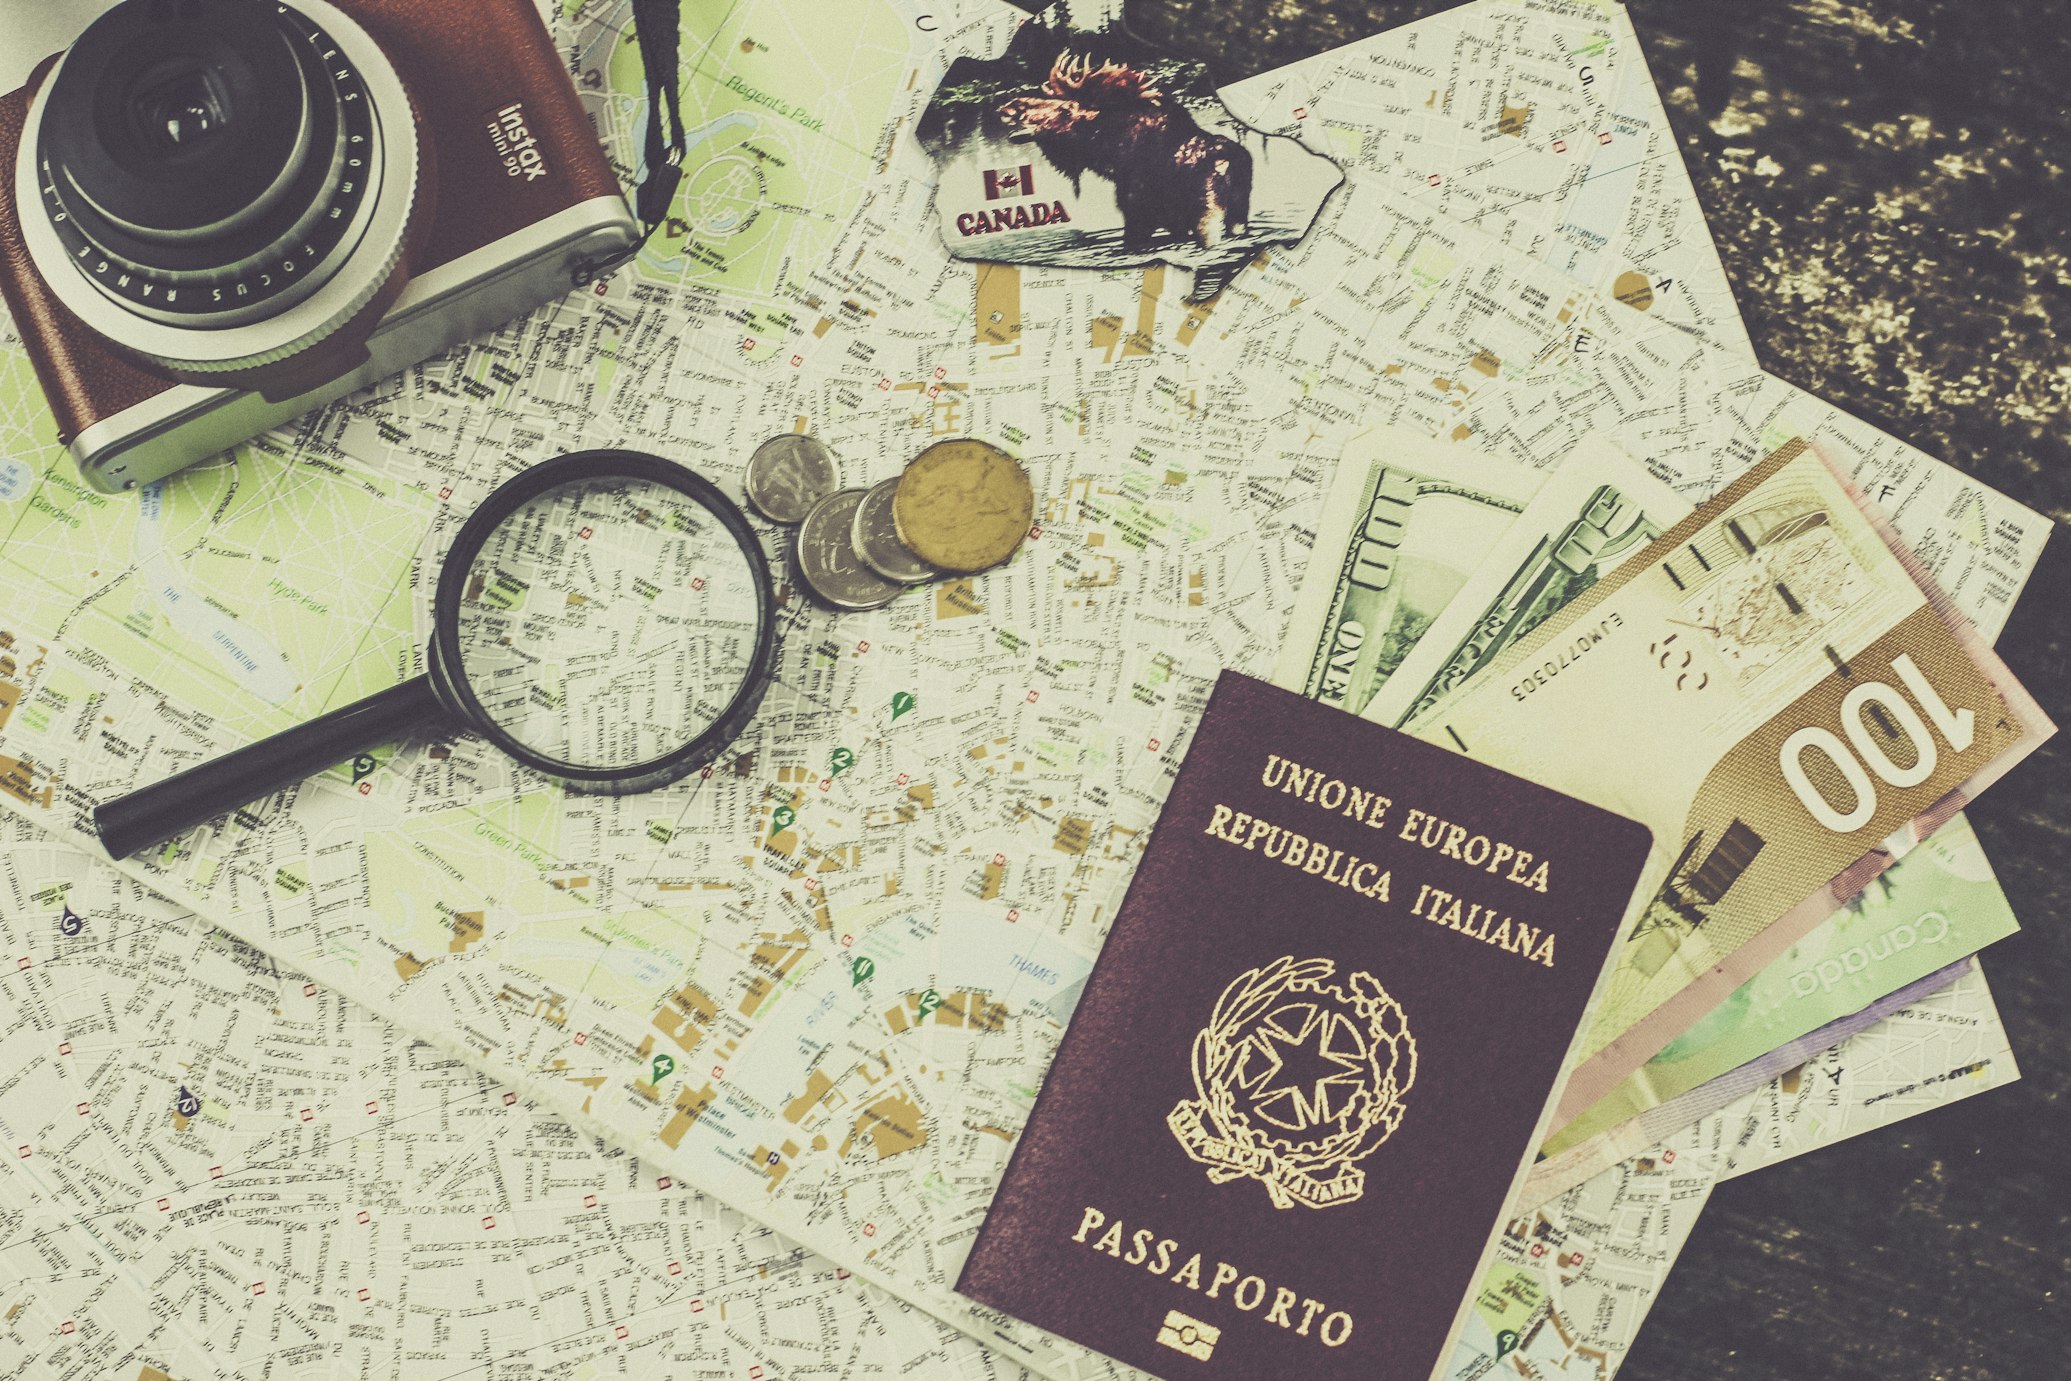 Passaporto italiano e macchinetta fotografica sopra delle mappe e banconote